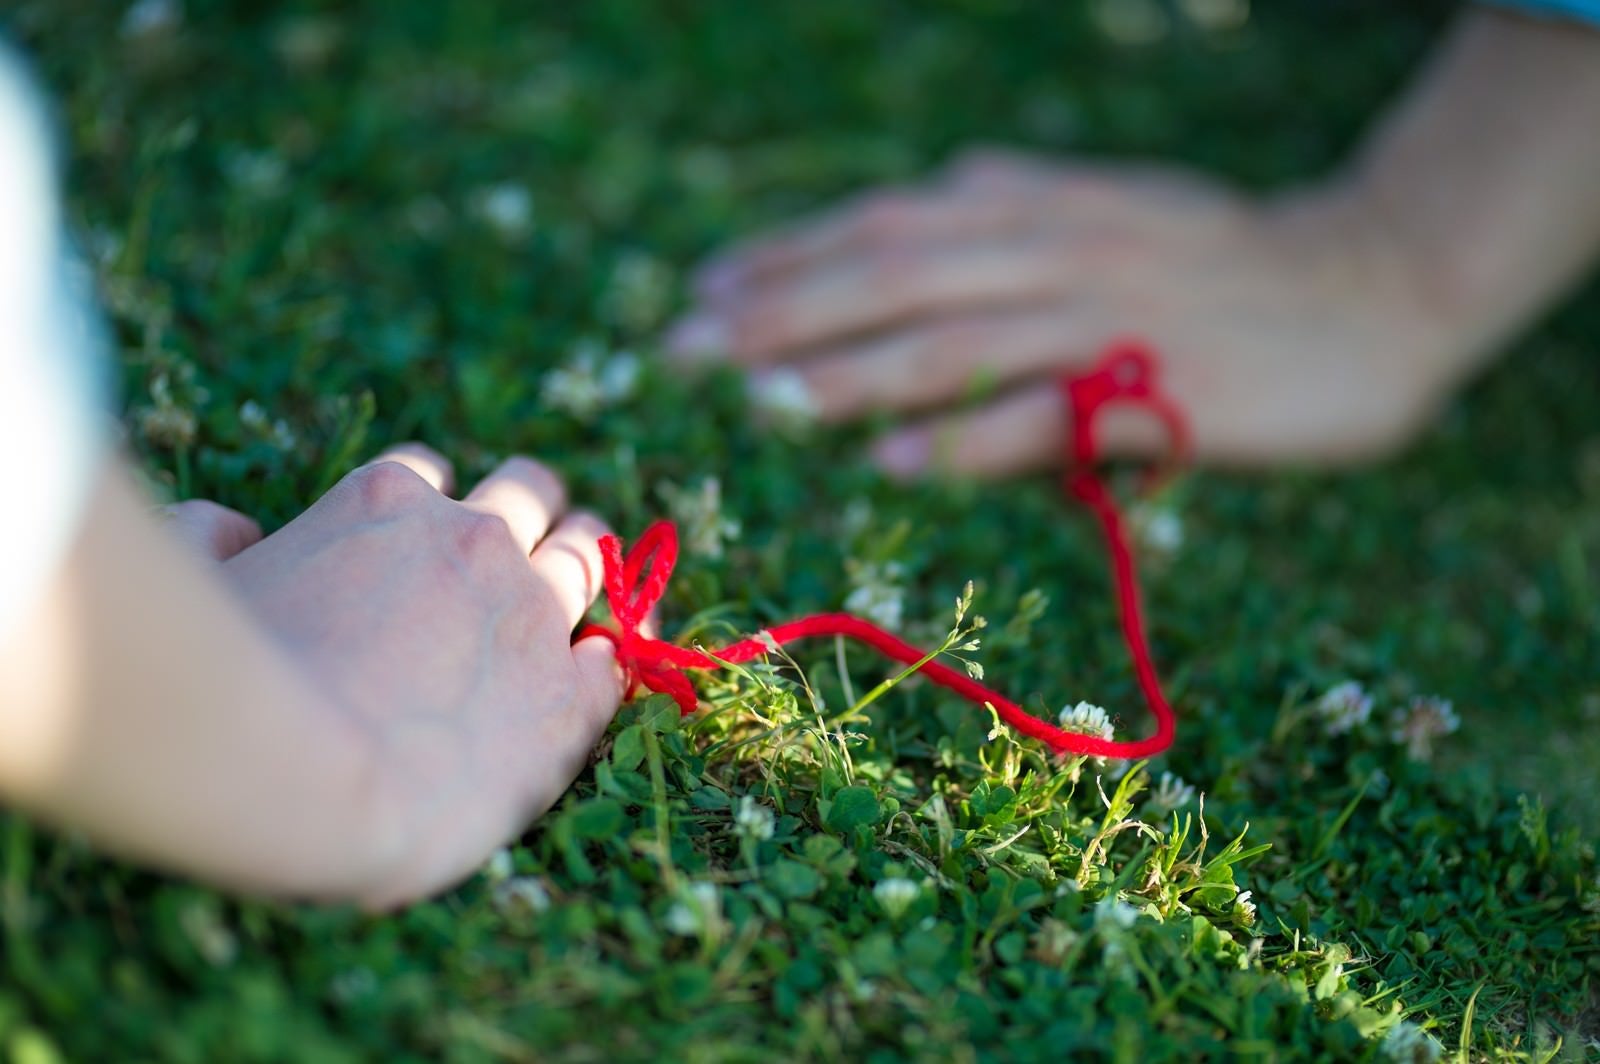 「赤い糸でつながれた女性と男性の手」の写真